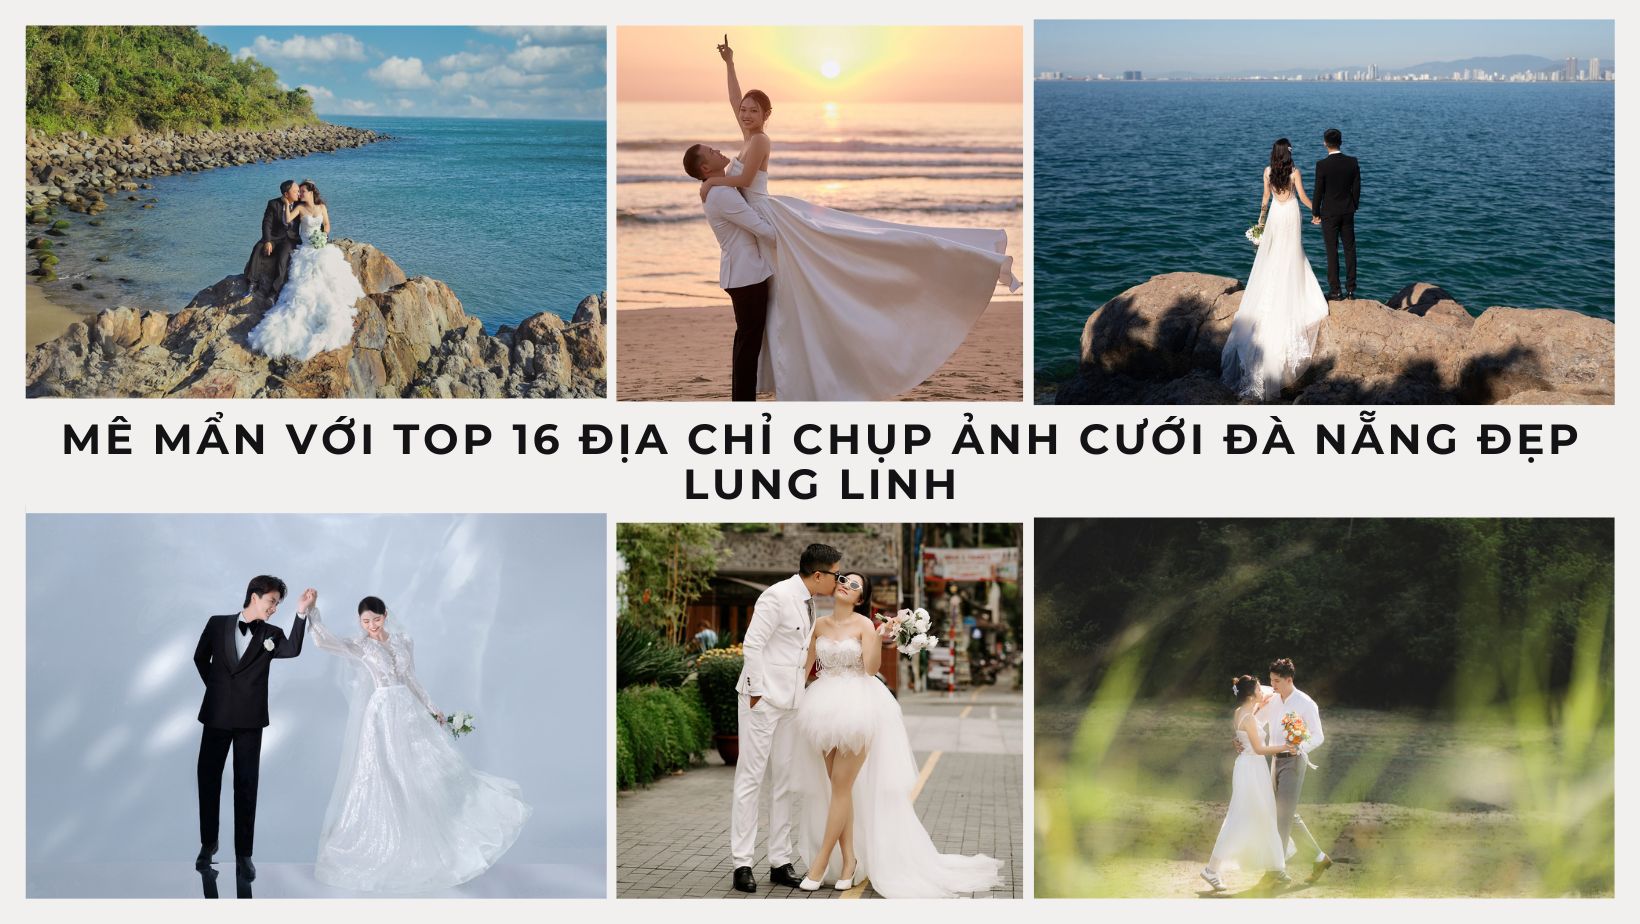 Mê mẩn với top 16 địa chỉ chụp ảnh cưới Đà Nẵng đẹp lung linh